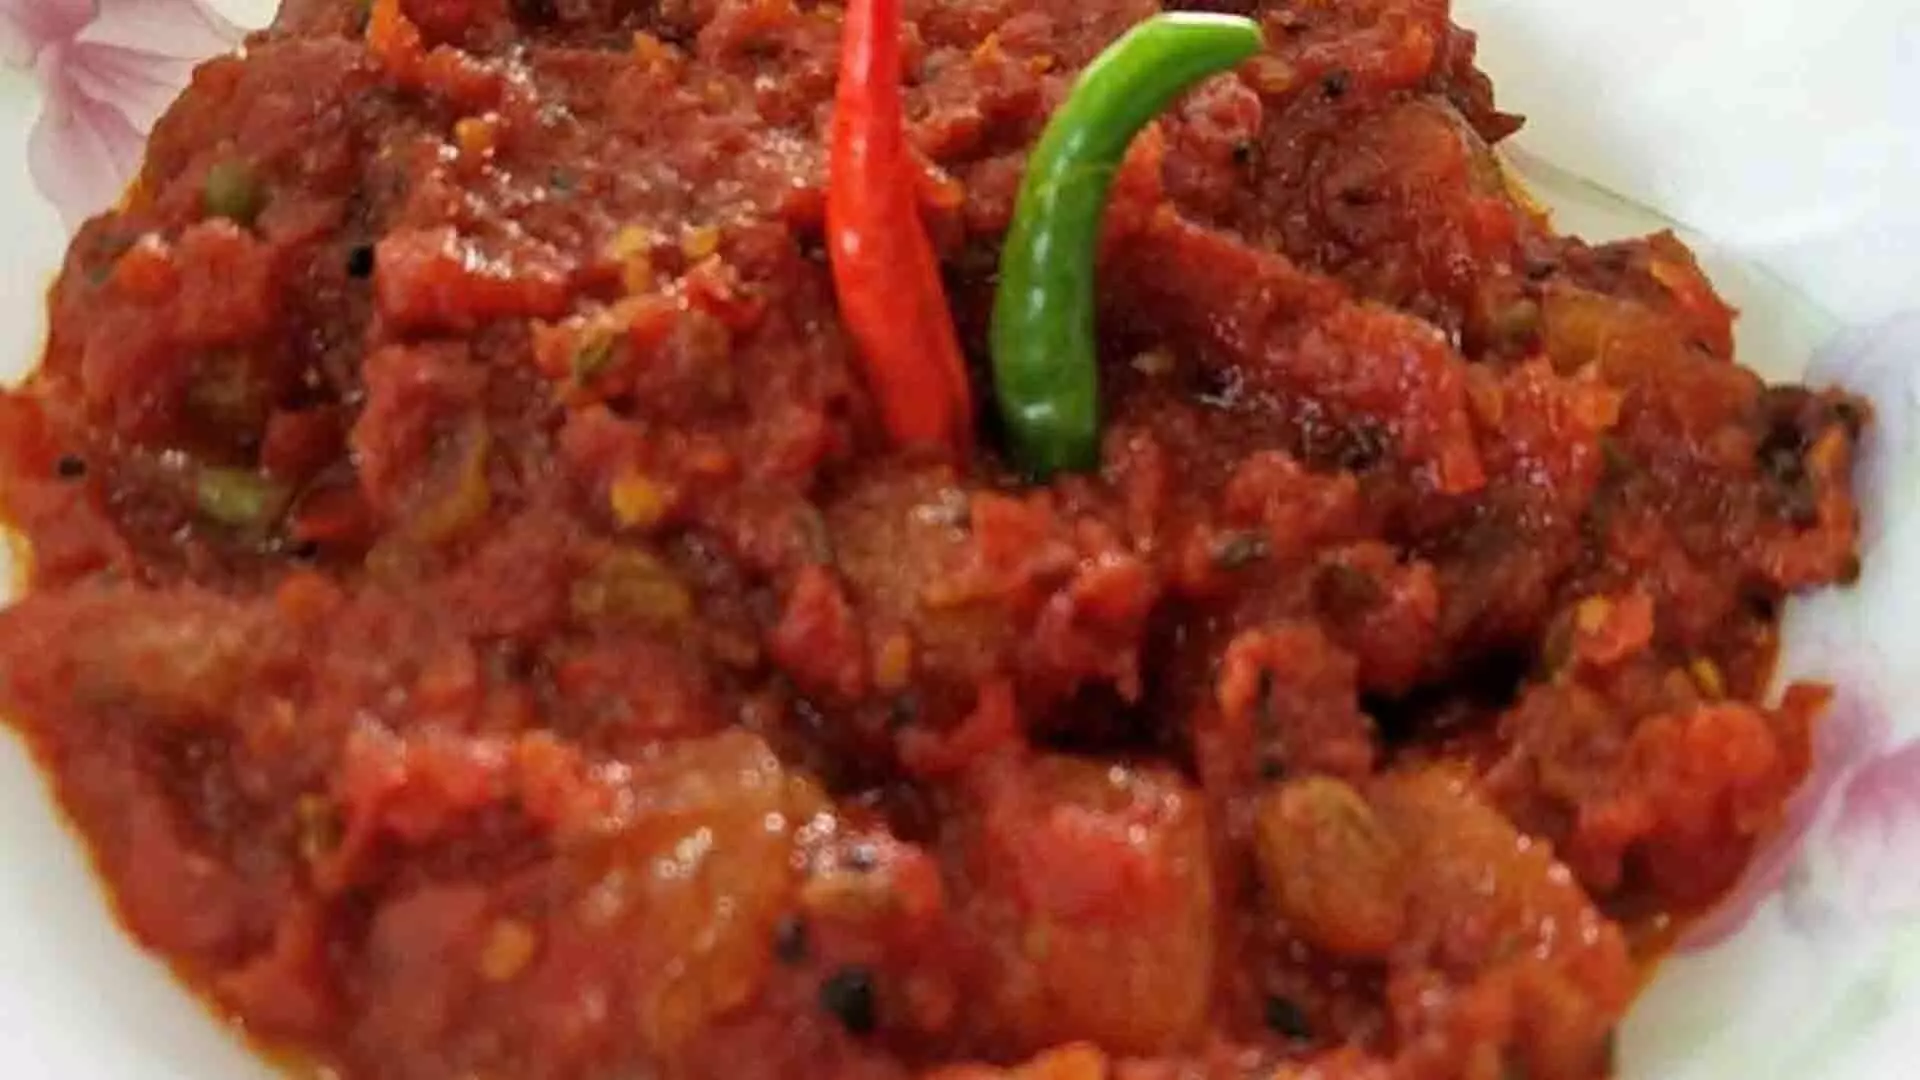 बंगाली टमाटर की चटनी देती हैं अपना बेहतरीन स्वाद, जानें इसे बनाने का आसान तरीका